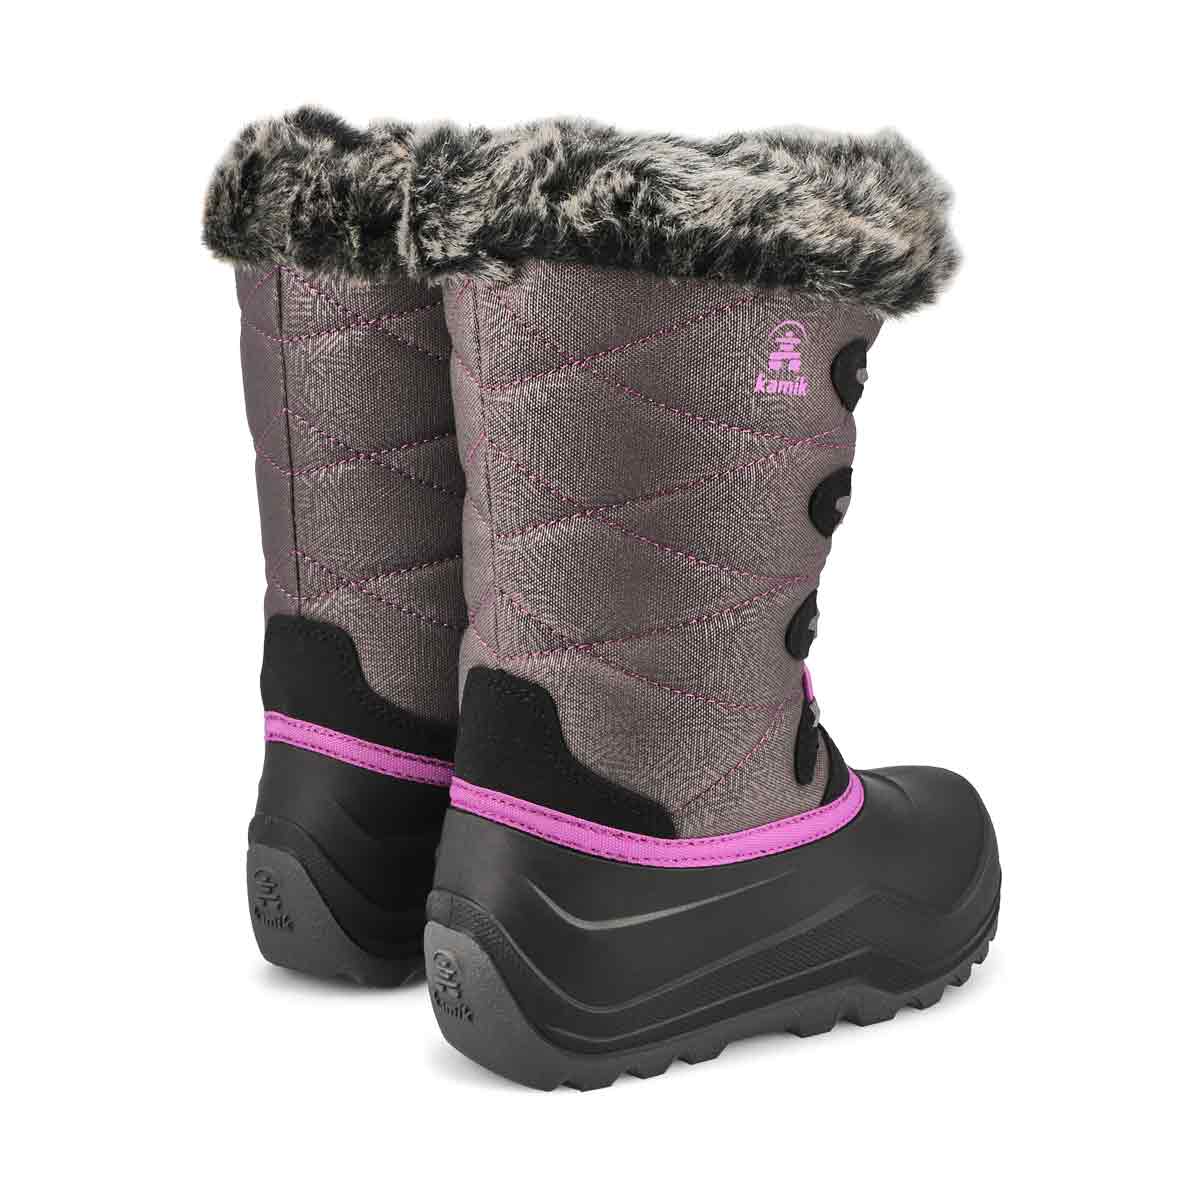 Girls' Snowgypsy 4 Waterproof Winter Boot